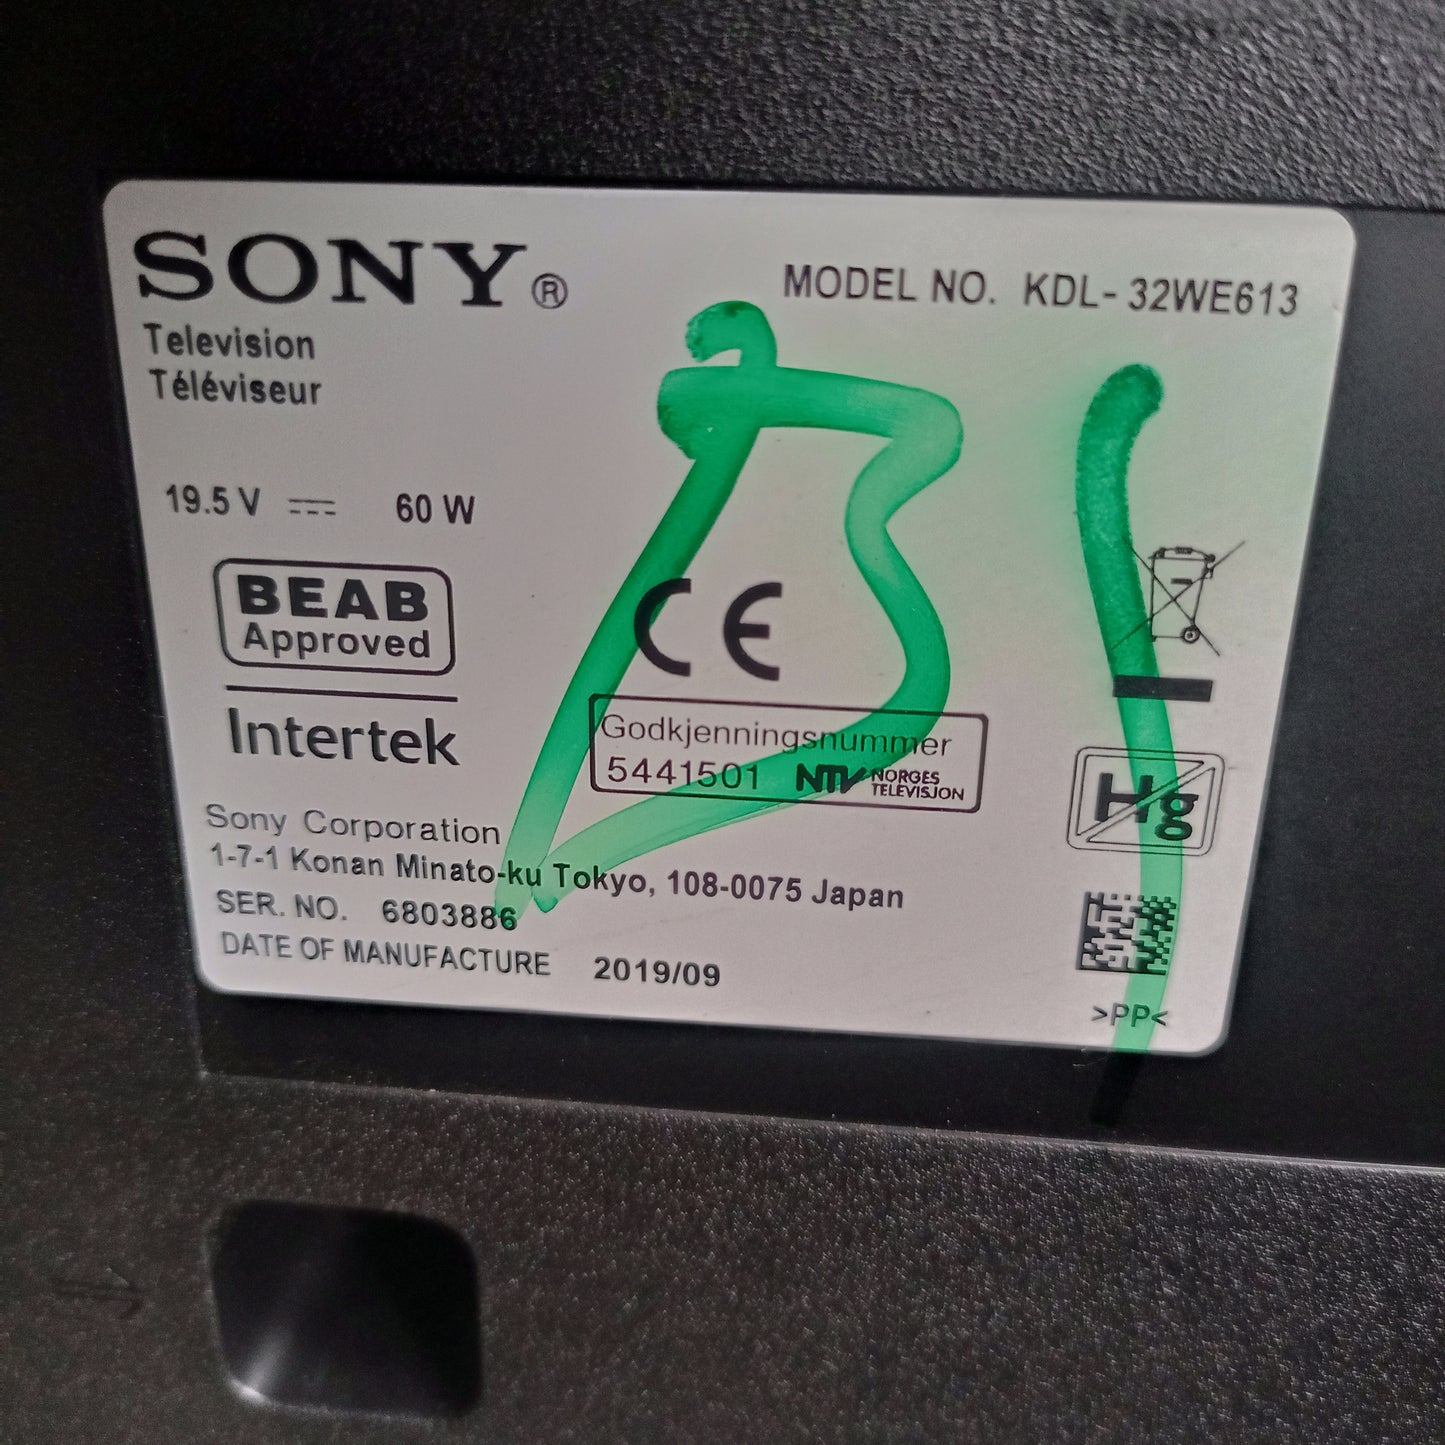 Sony BRAVIA 32 Inch KDL-WE613 HDR Smart Full HD LED TV (DC-19.5V) - Model number sticker